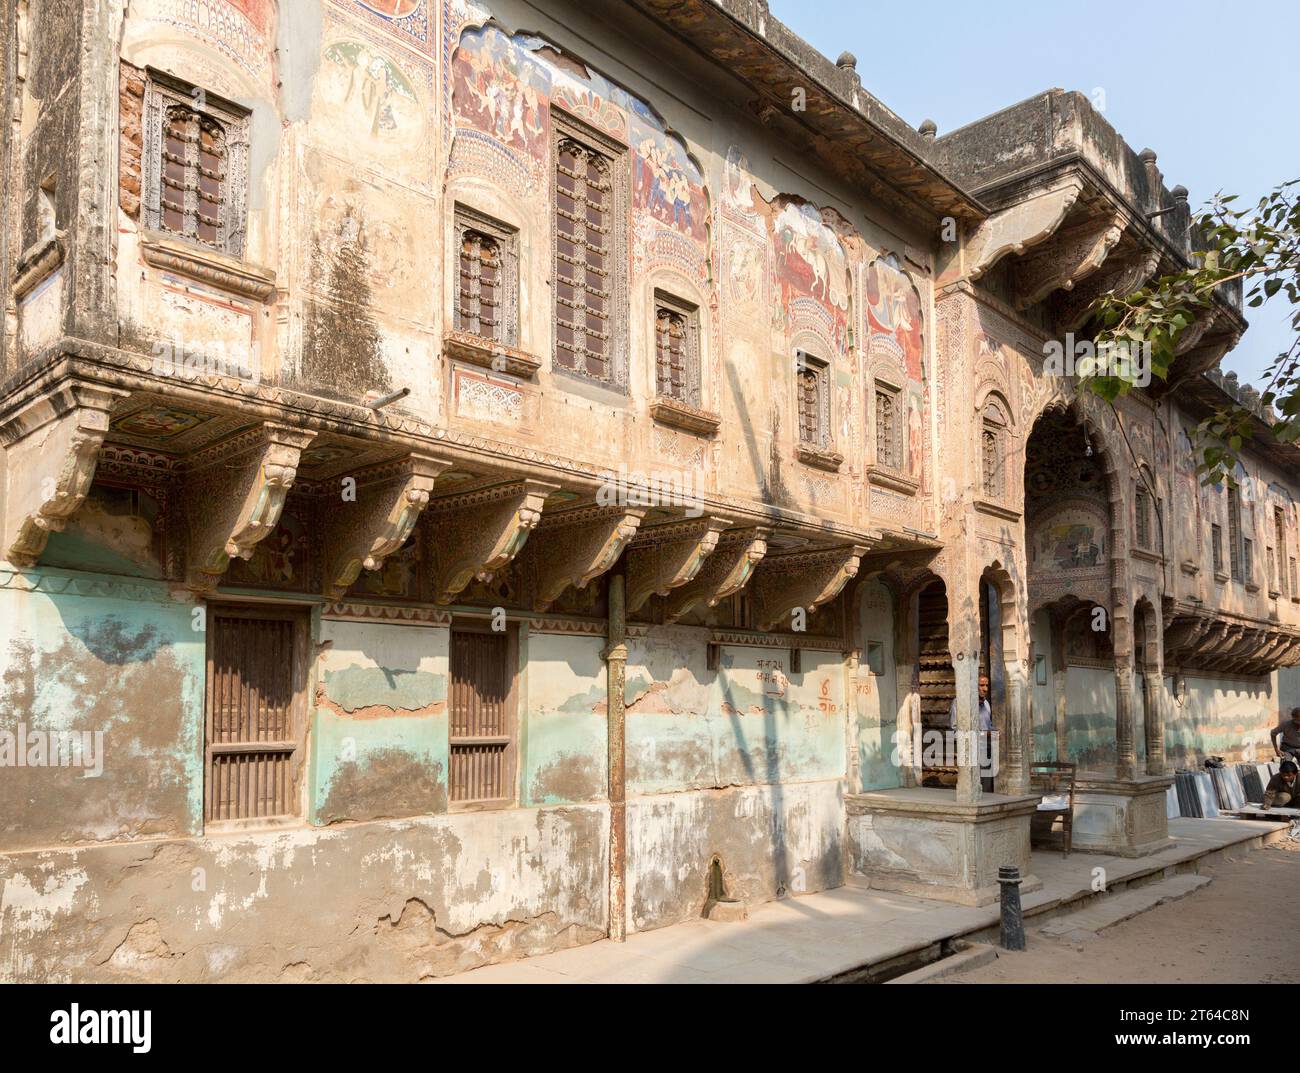 Bansidhar Bhagat Haveli, Nawalgarh, Rajasthan, Indien. Als Haveli werden die palastartig ausgestalteten Wohnhäuser wohlhabender – meist muslimischer – Stockfoto